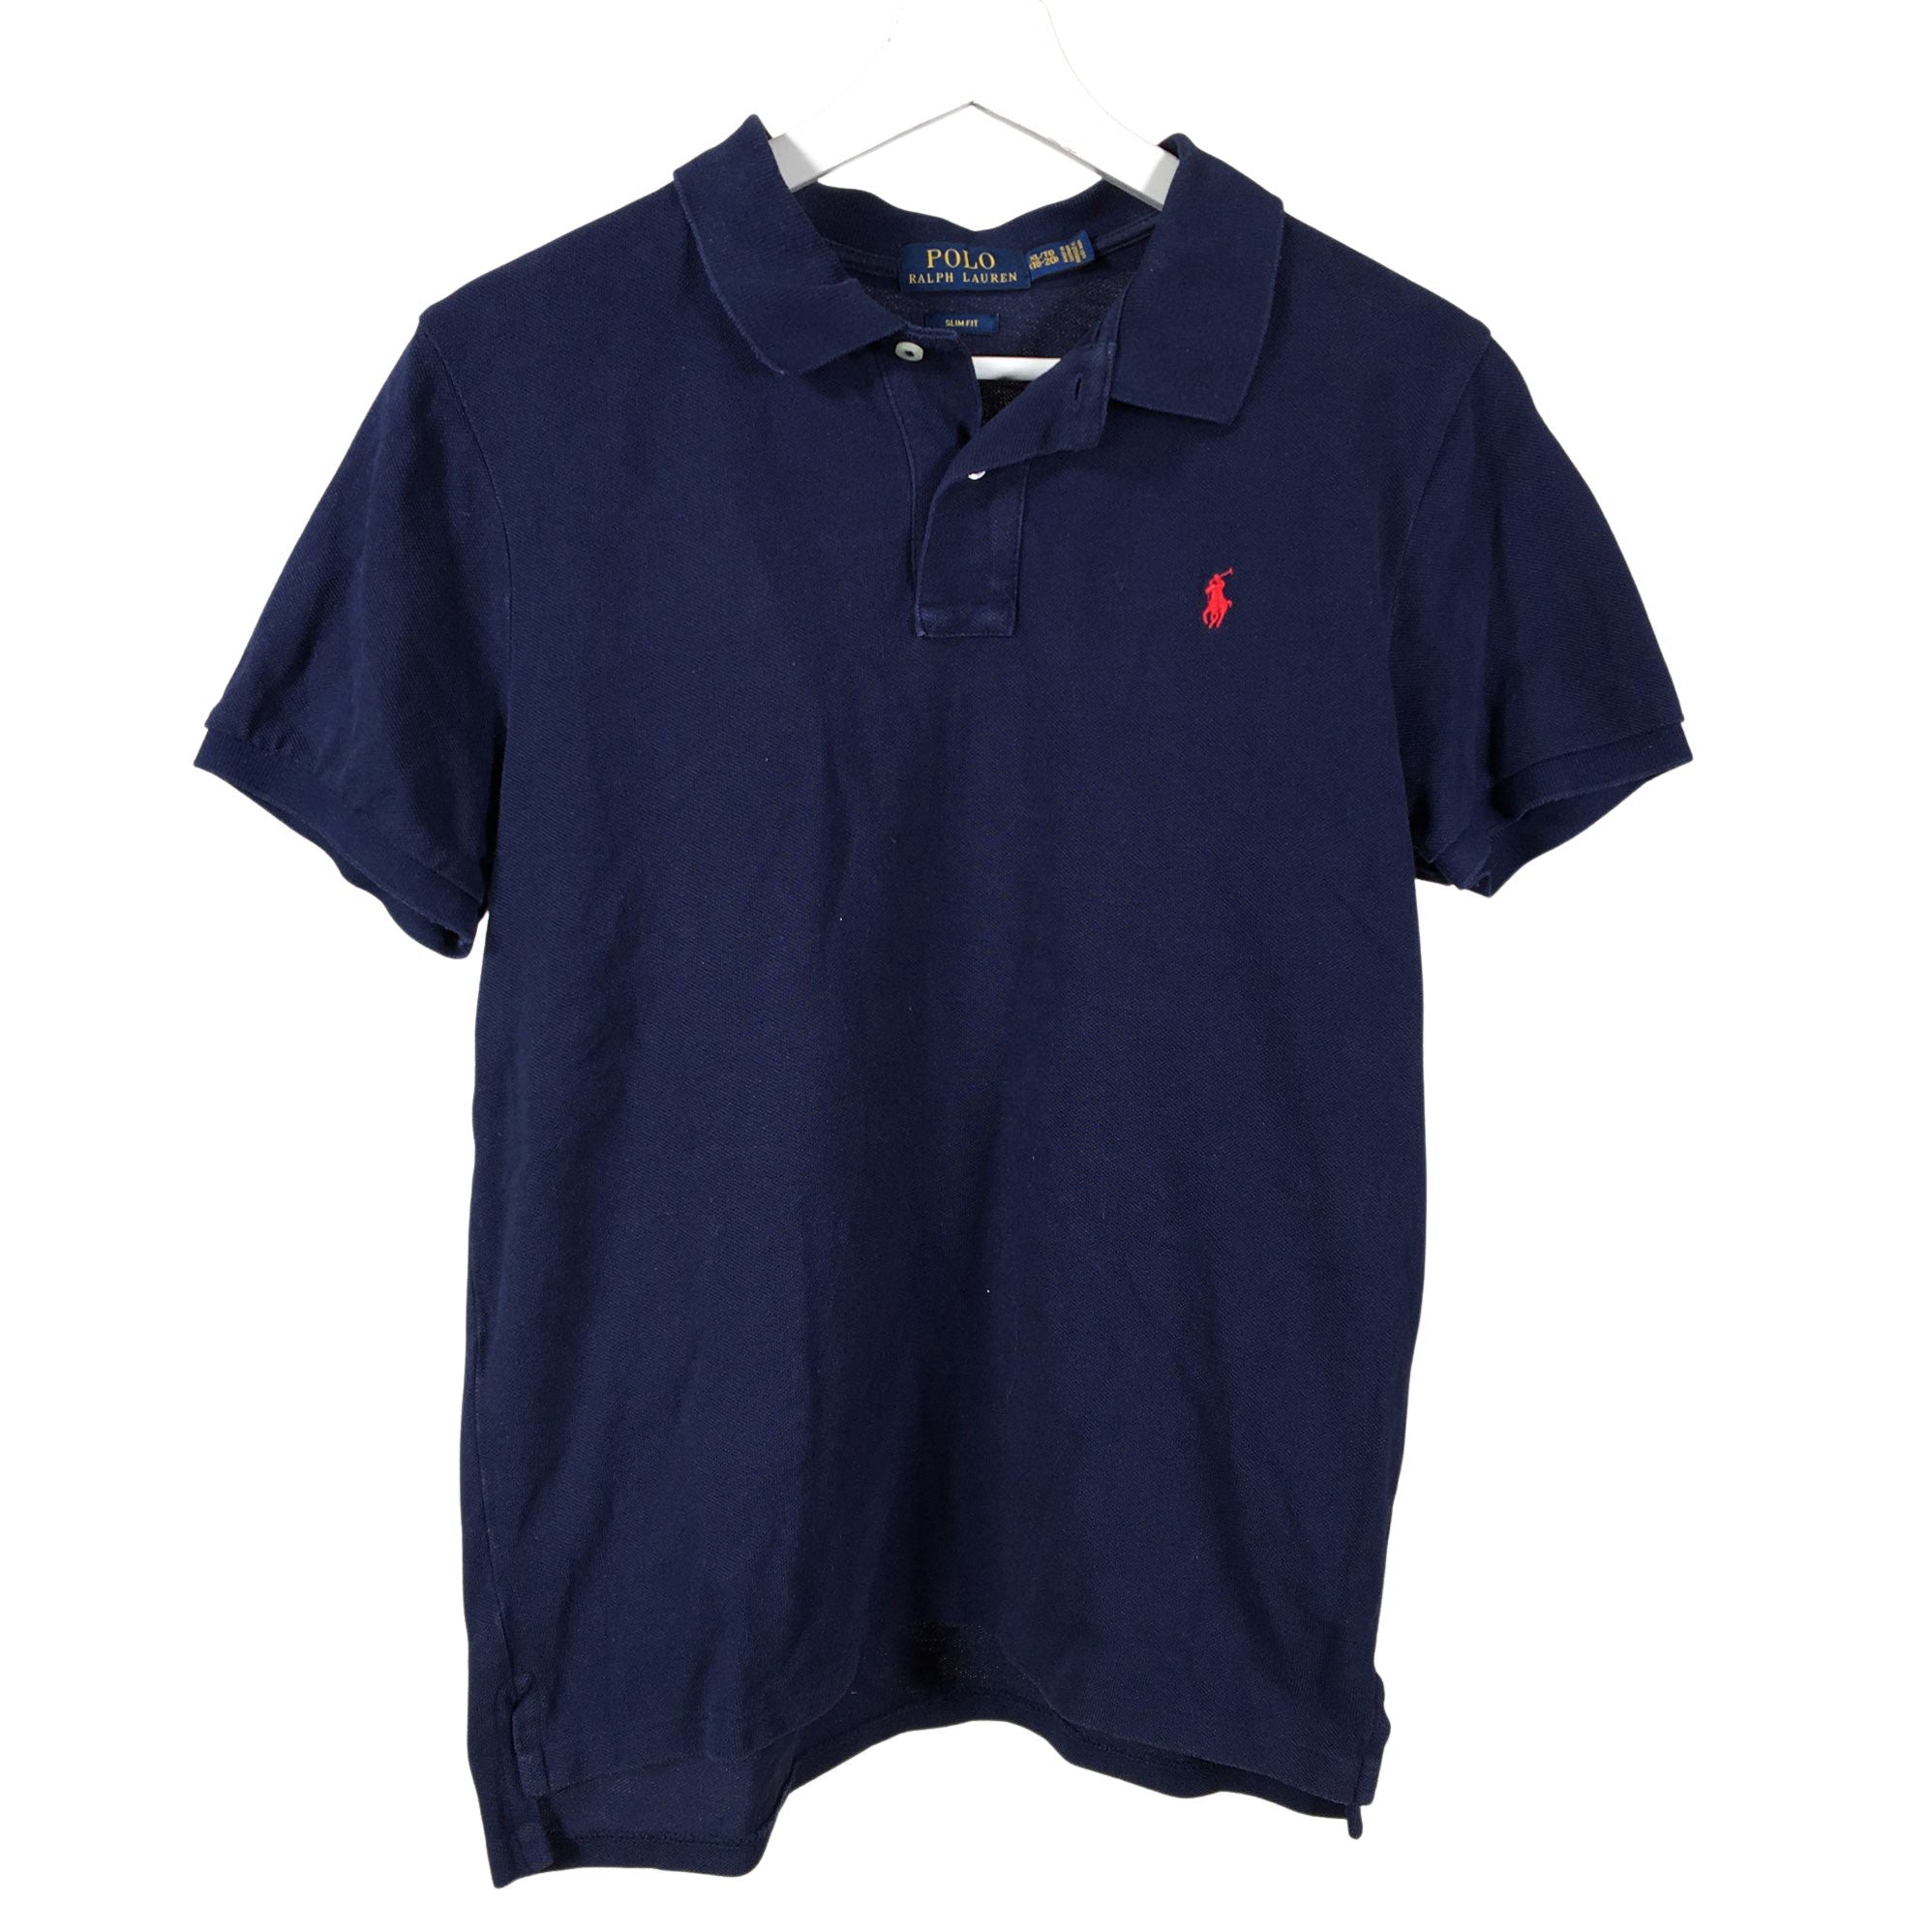 Boys' Ralph Lauren Polo shirt, size 170 - 176 (Blue) | Emmy